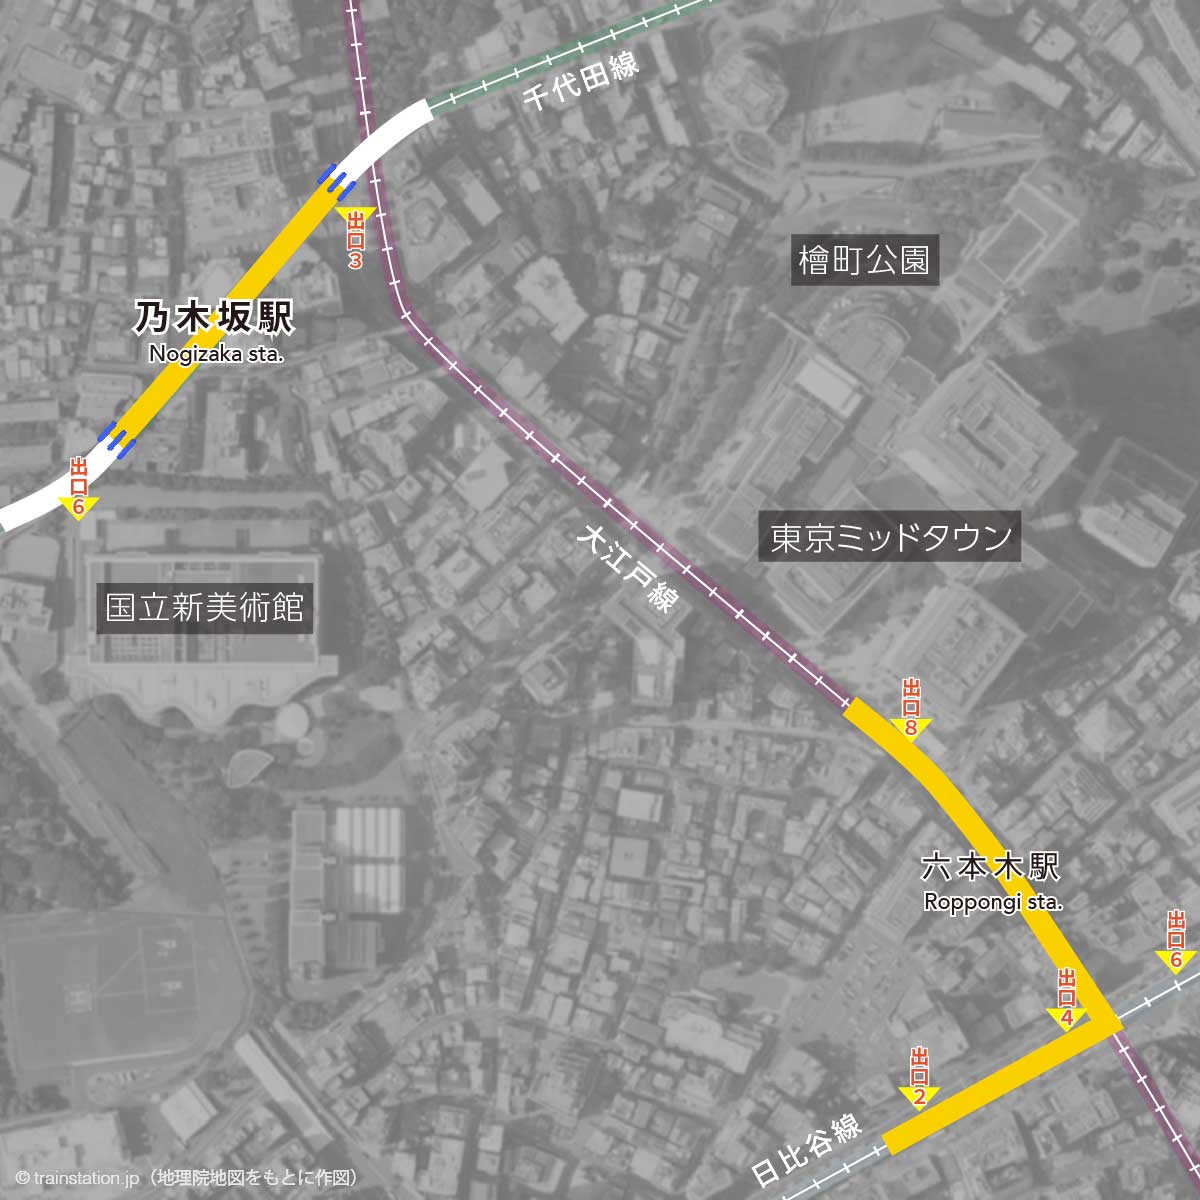 乃木坂駅構内図と周辺マップ